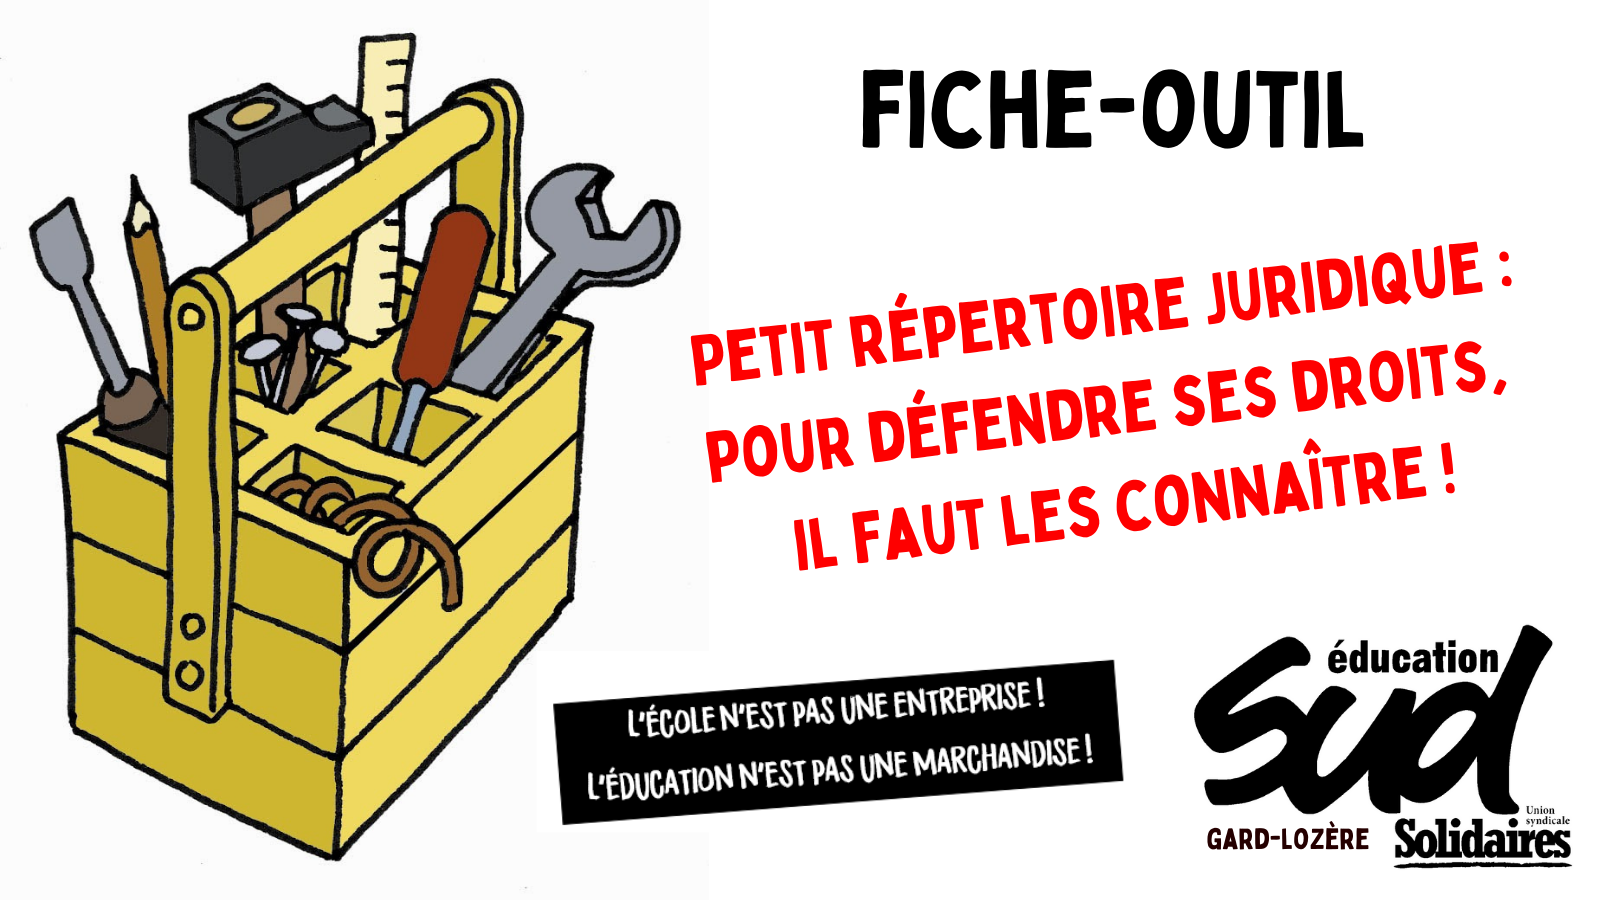 Fiche-outil / Petit répertoire juridique